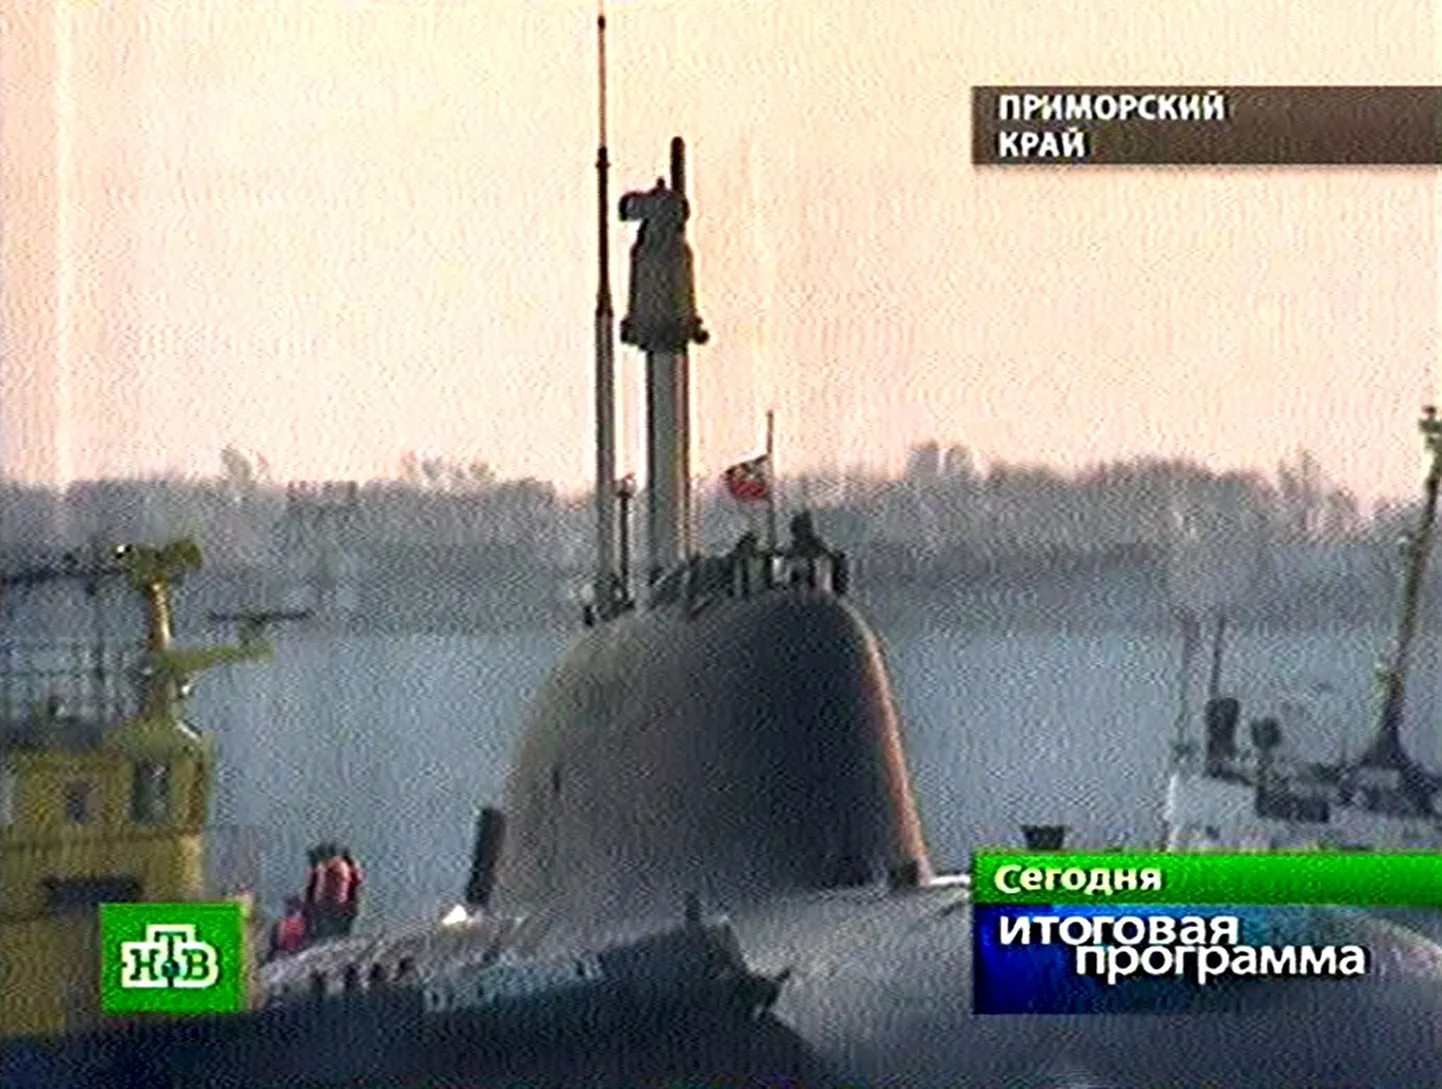 Tuumaalveelaev K-152 Nerpa